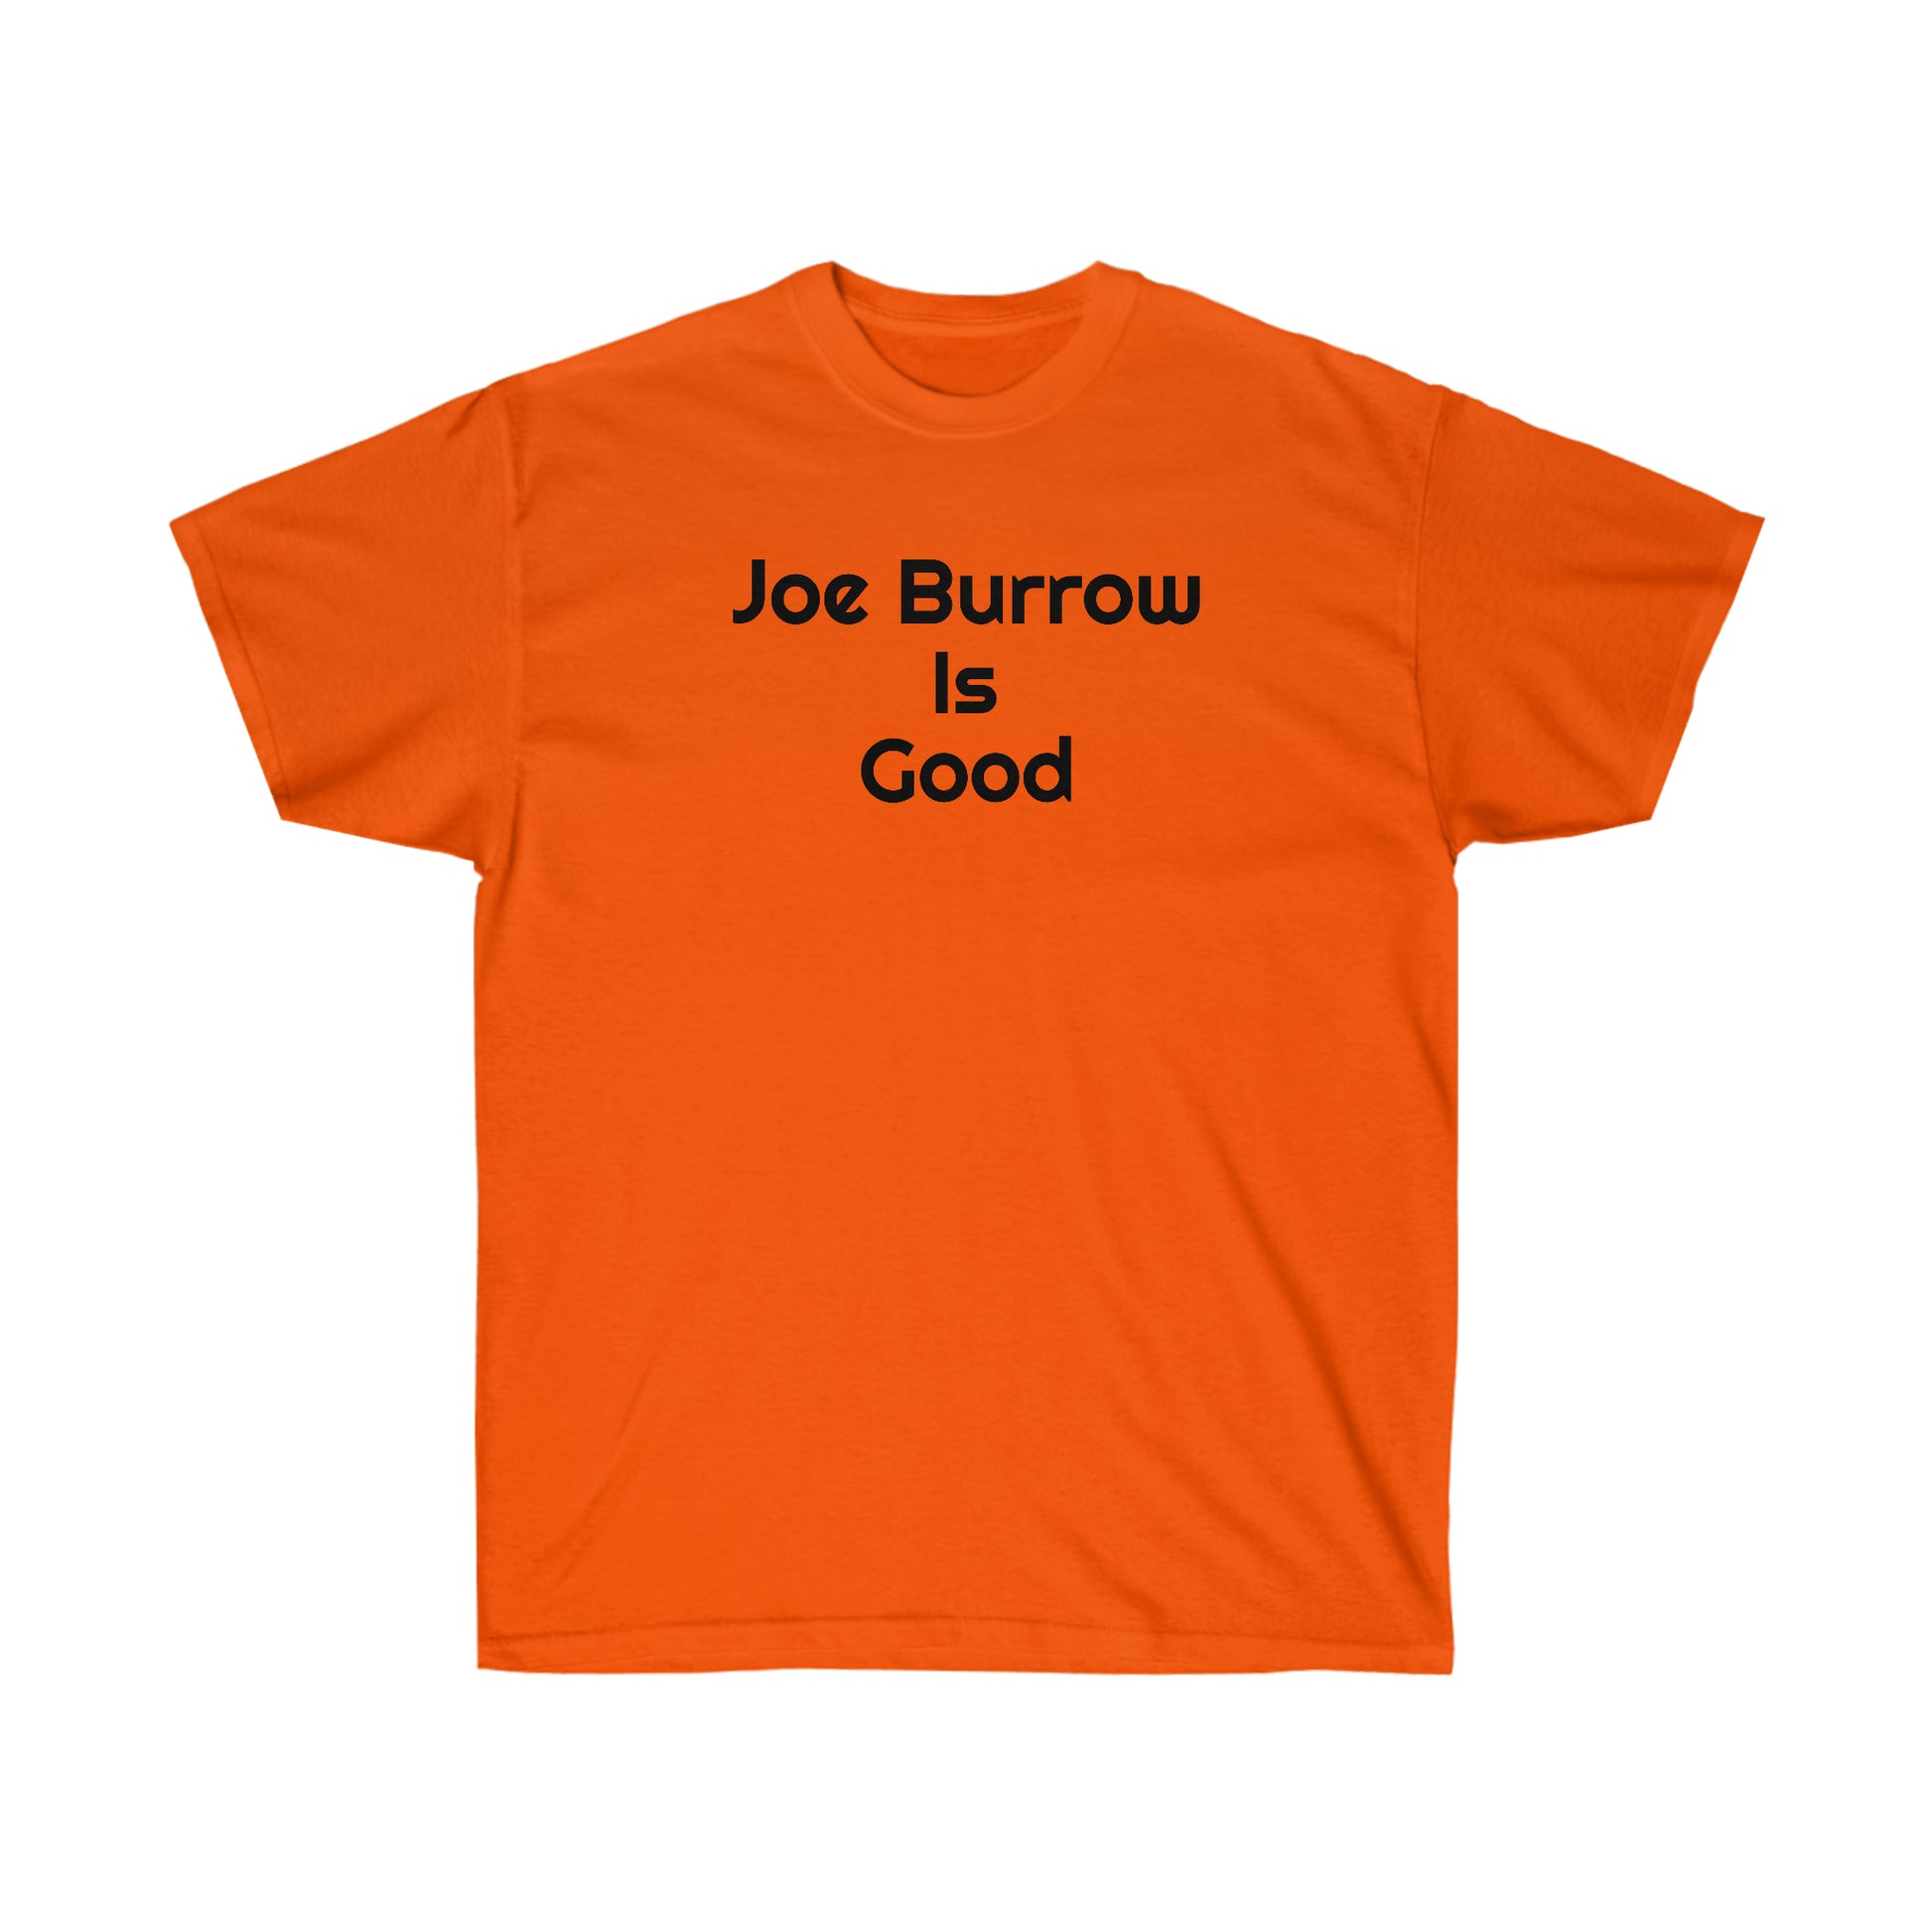 Joe Burrow Is Good Tee - IsGoodBrand